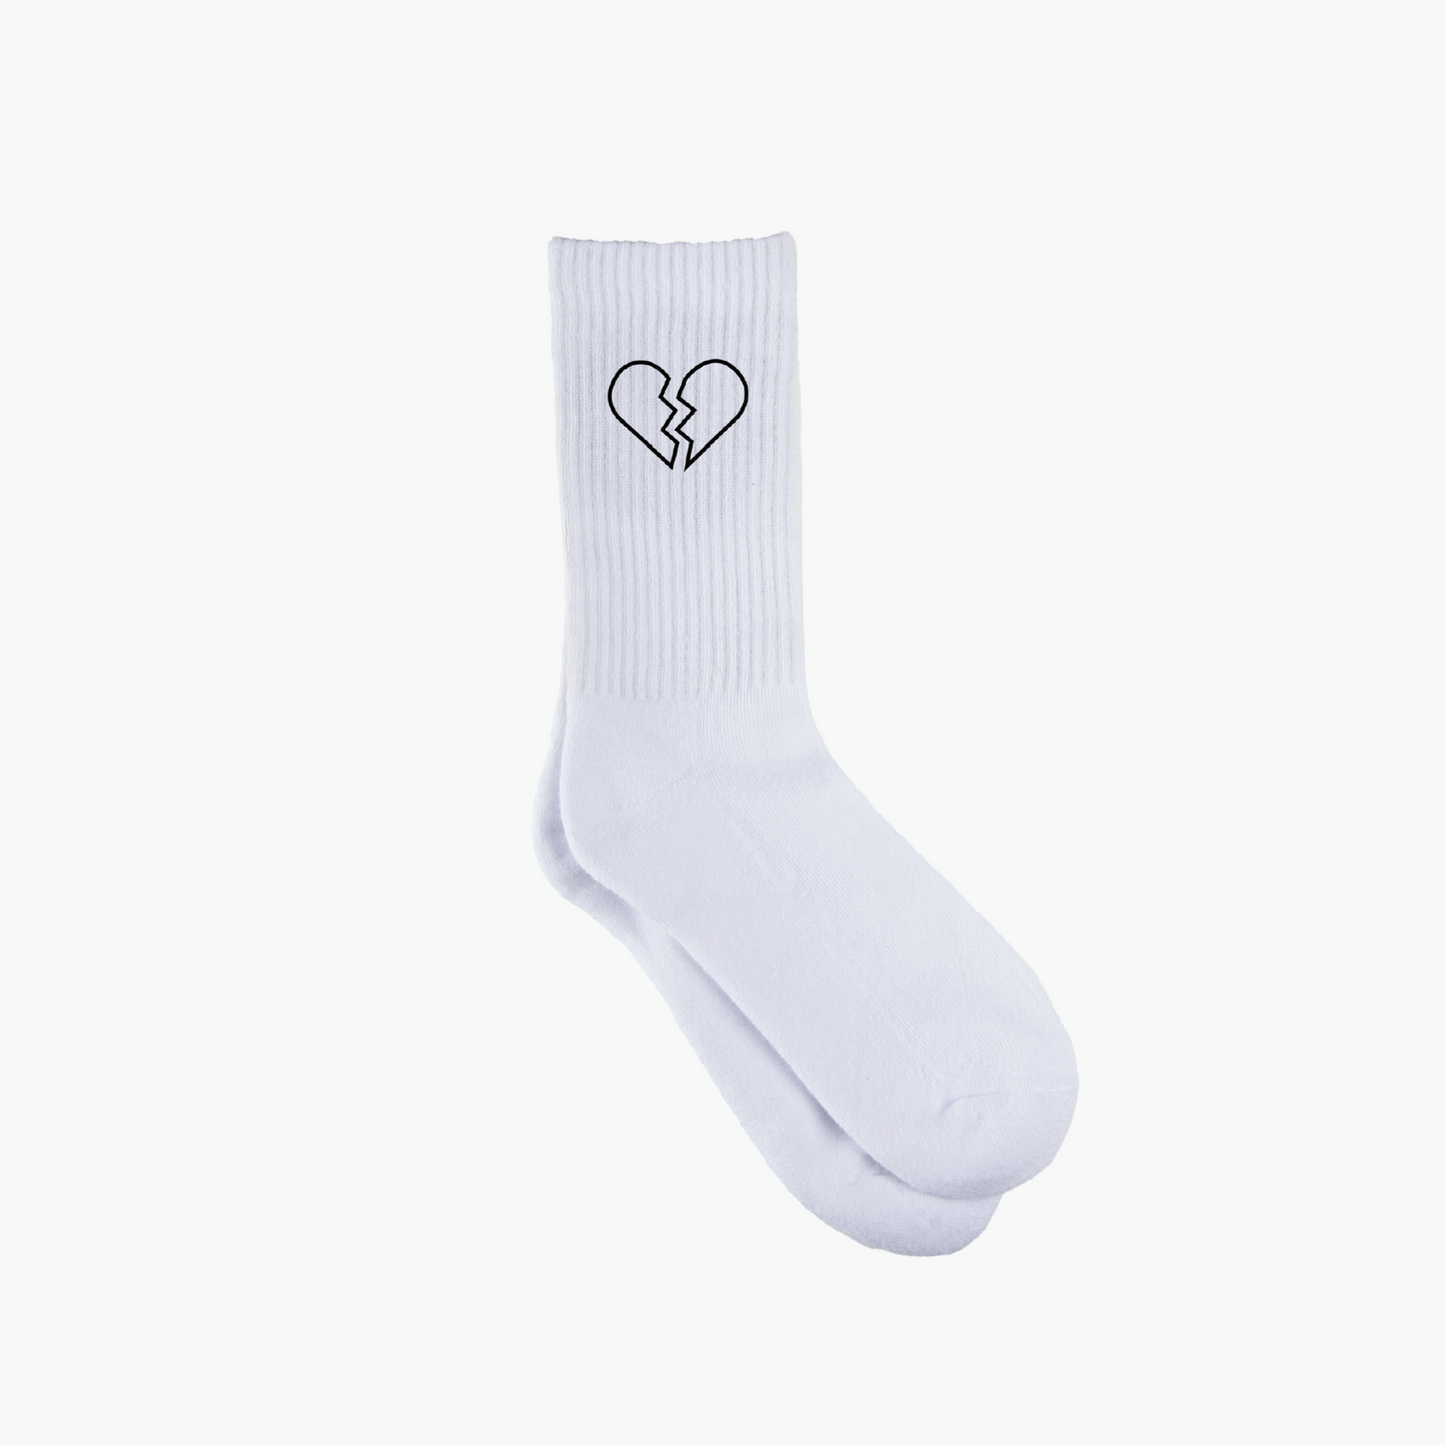 Broken heart Socks